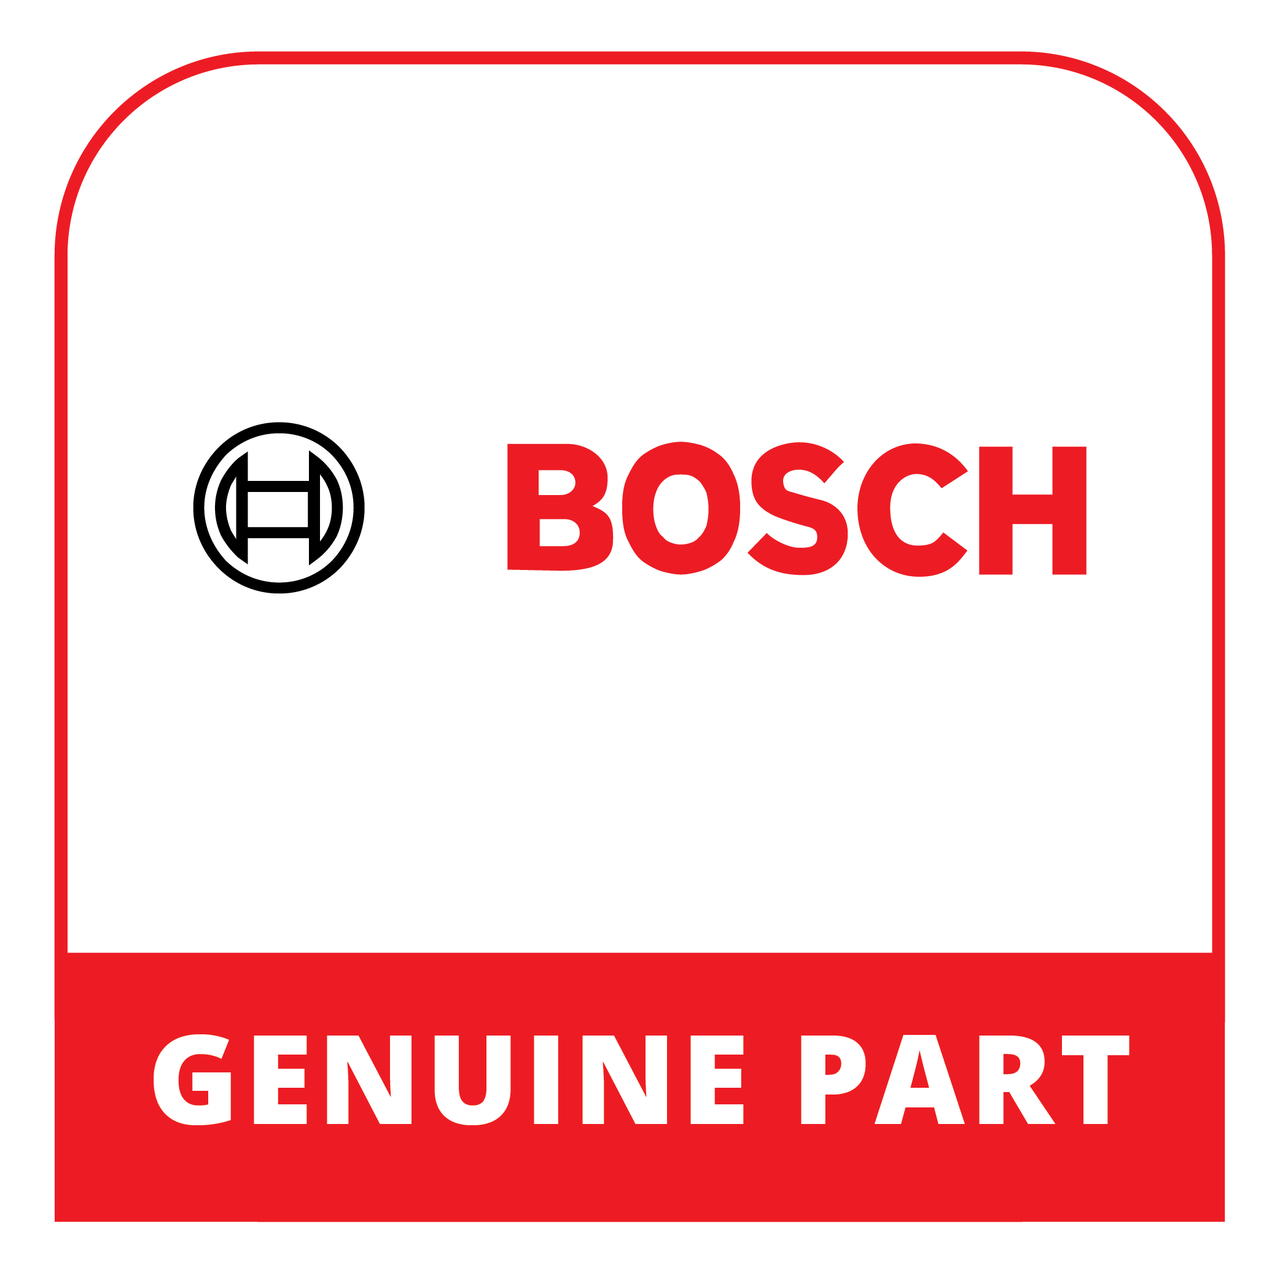 Bosch (Thermador) 23003859 - Door - Genuine Bosch (Thermador) Part